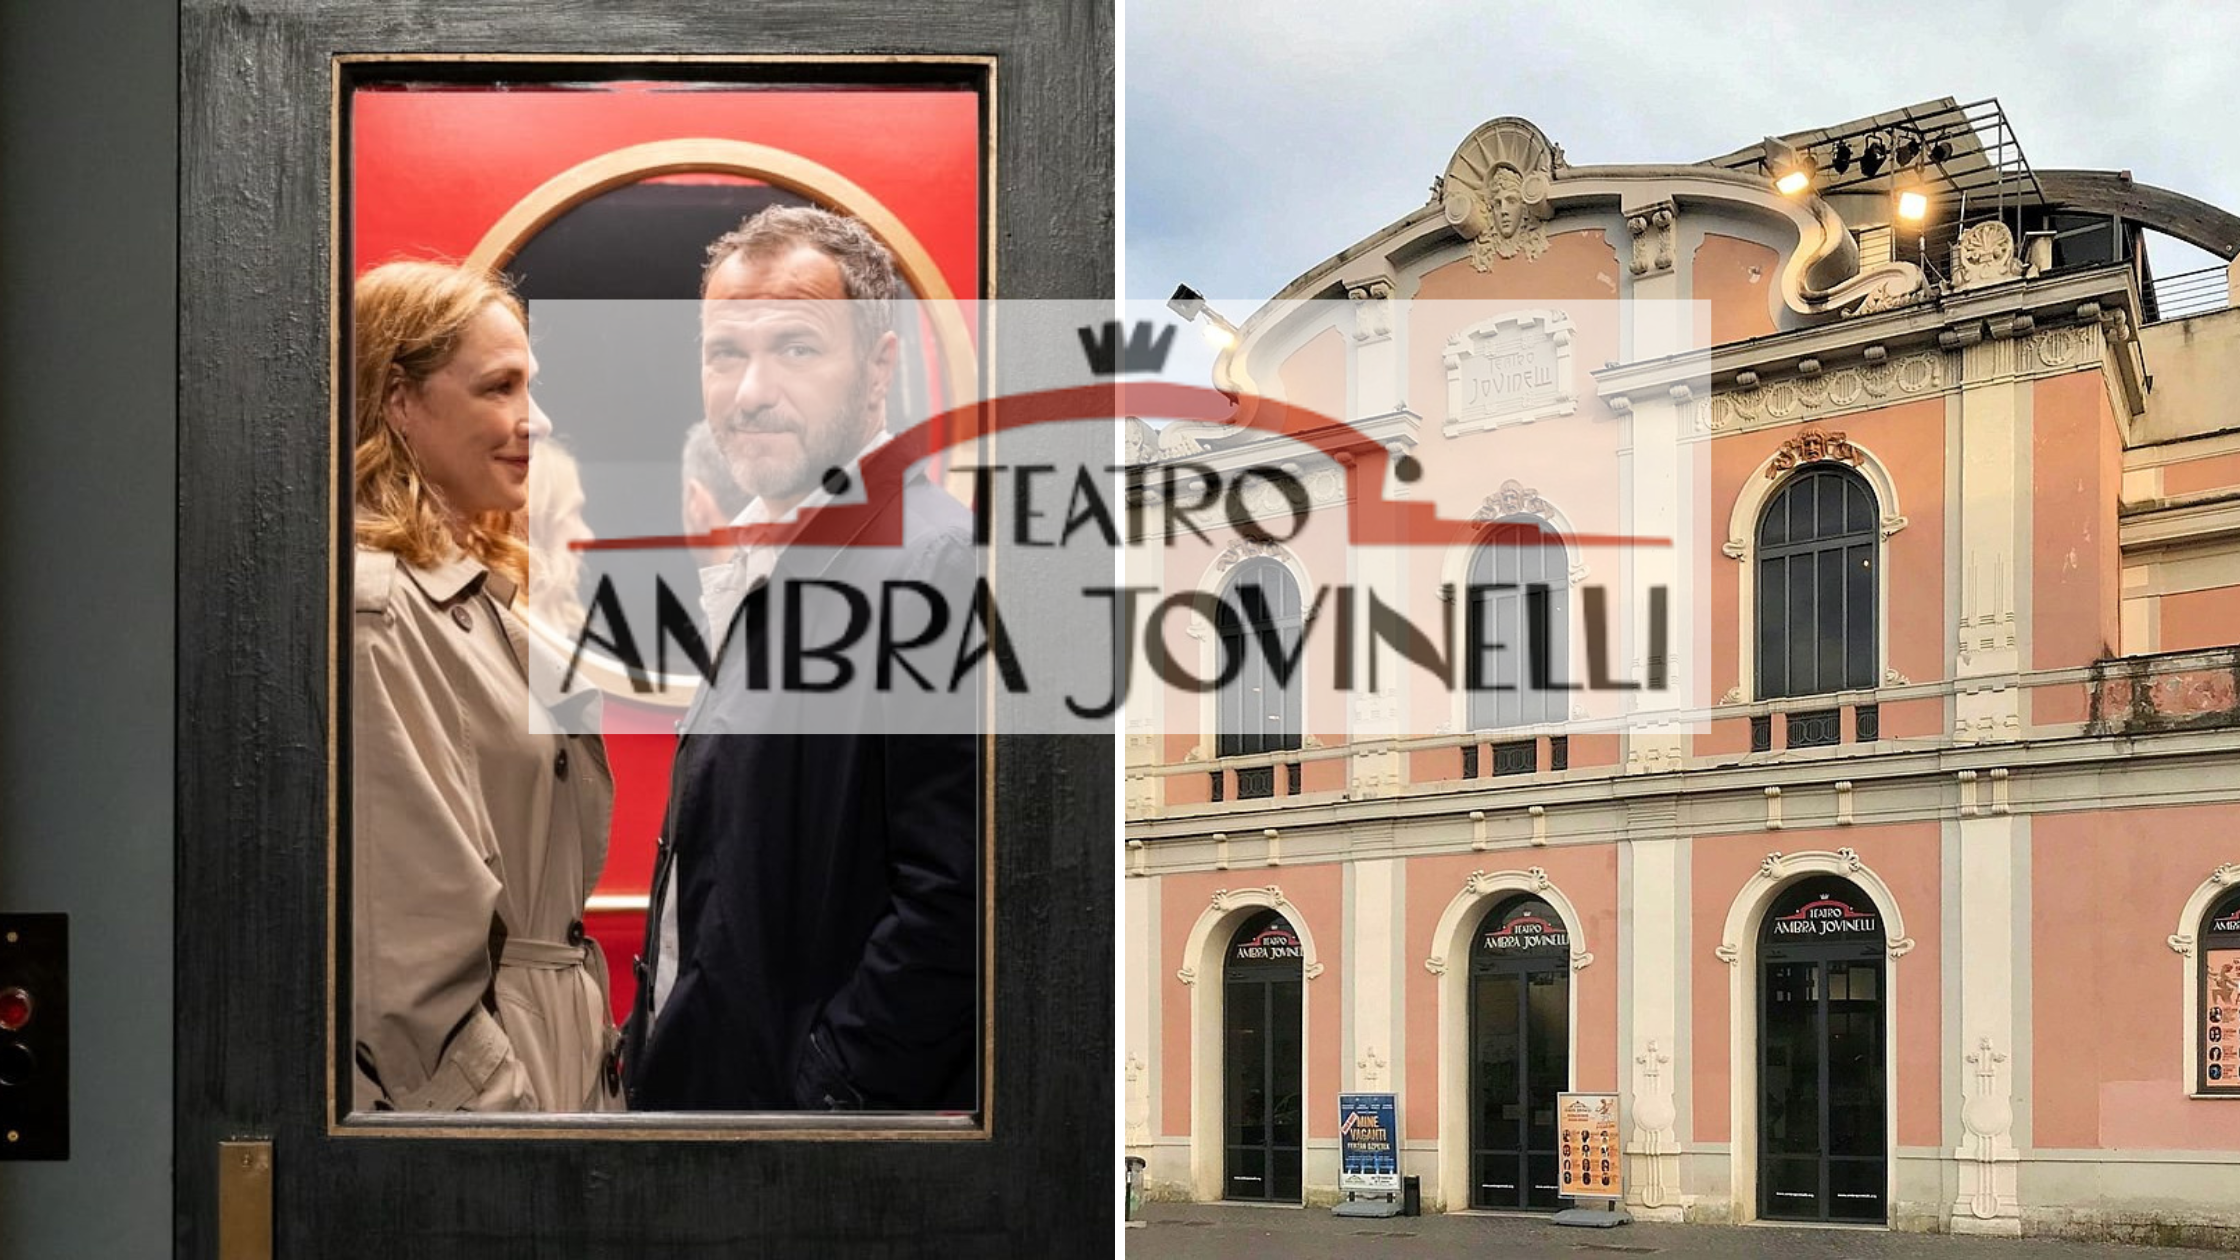 Dal 2 al 19/5/24 “Amanti” al Teatro Ambra Jovinelli